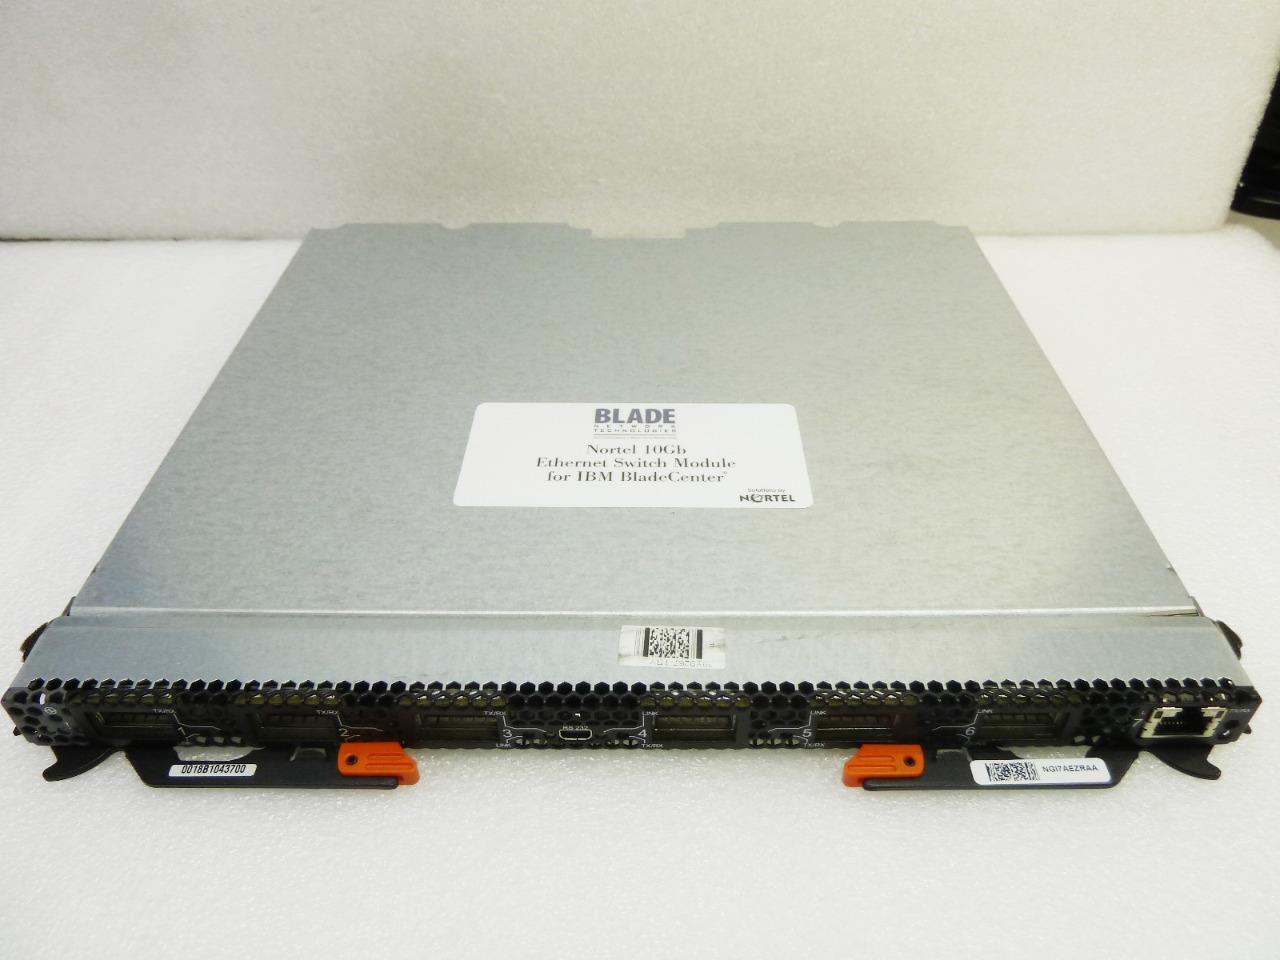 IBM BladeCenter Nortel 10Gb Ethernet Switch Module | 39Y9265 | 39Y9264 |